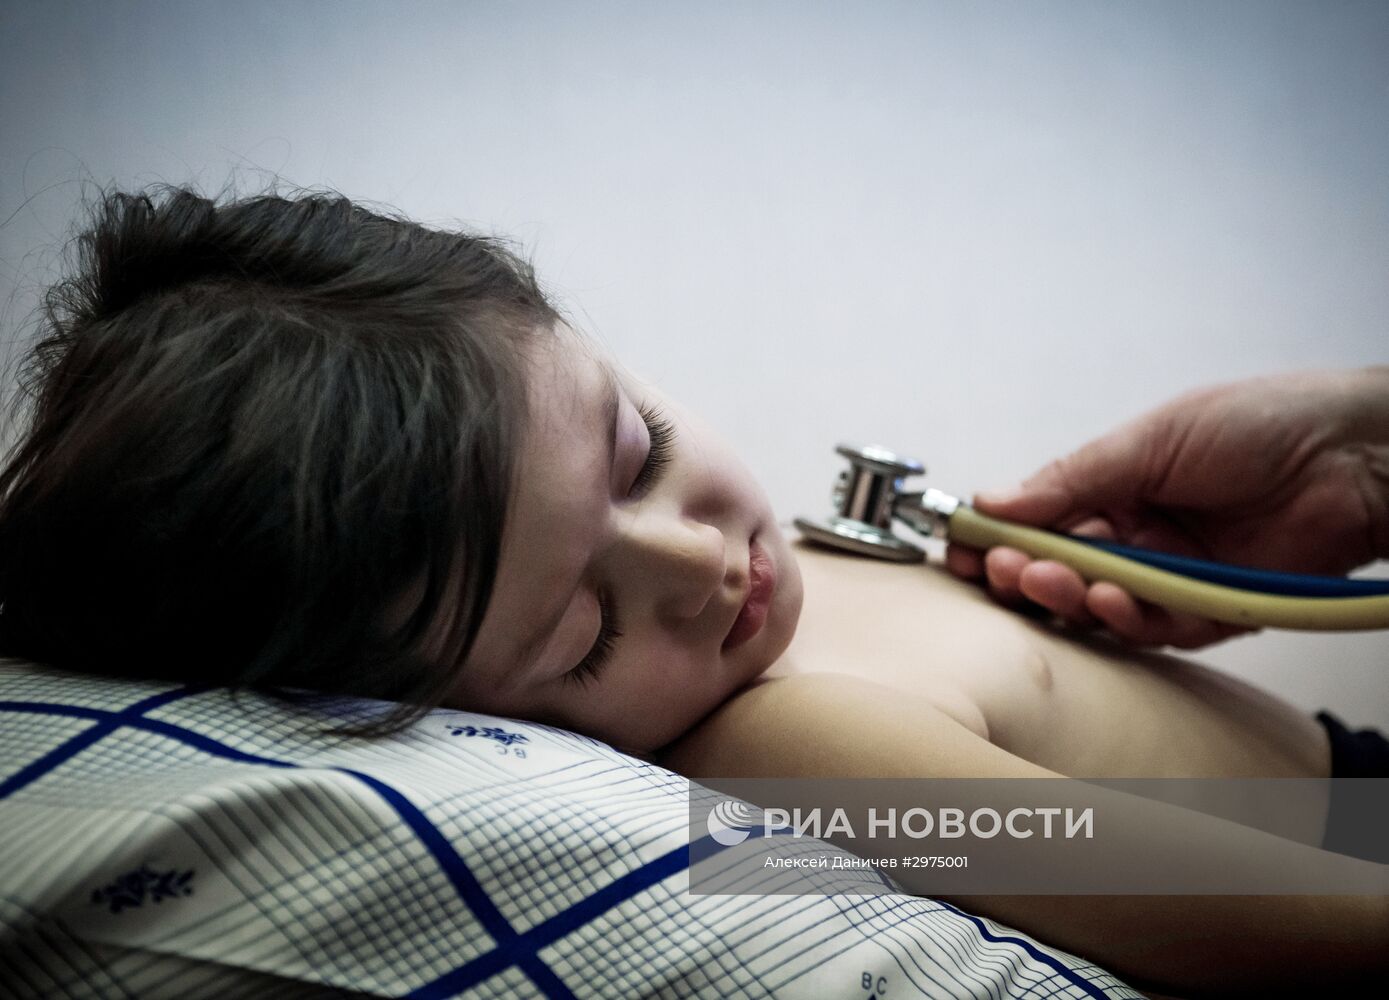 Сирийских детей привезли на лечение в военно-медицинскую академию Санкт-Петербурга